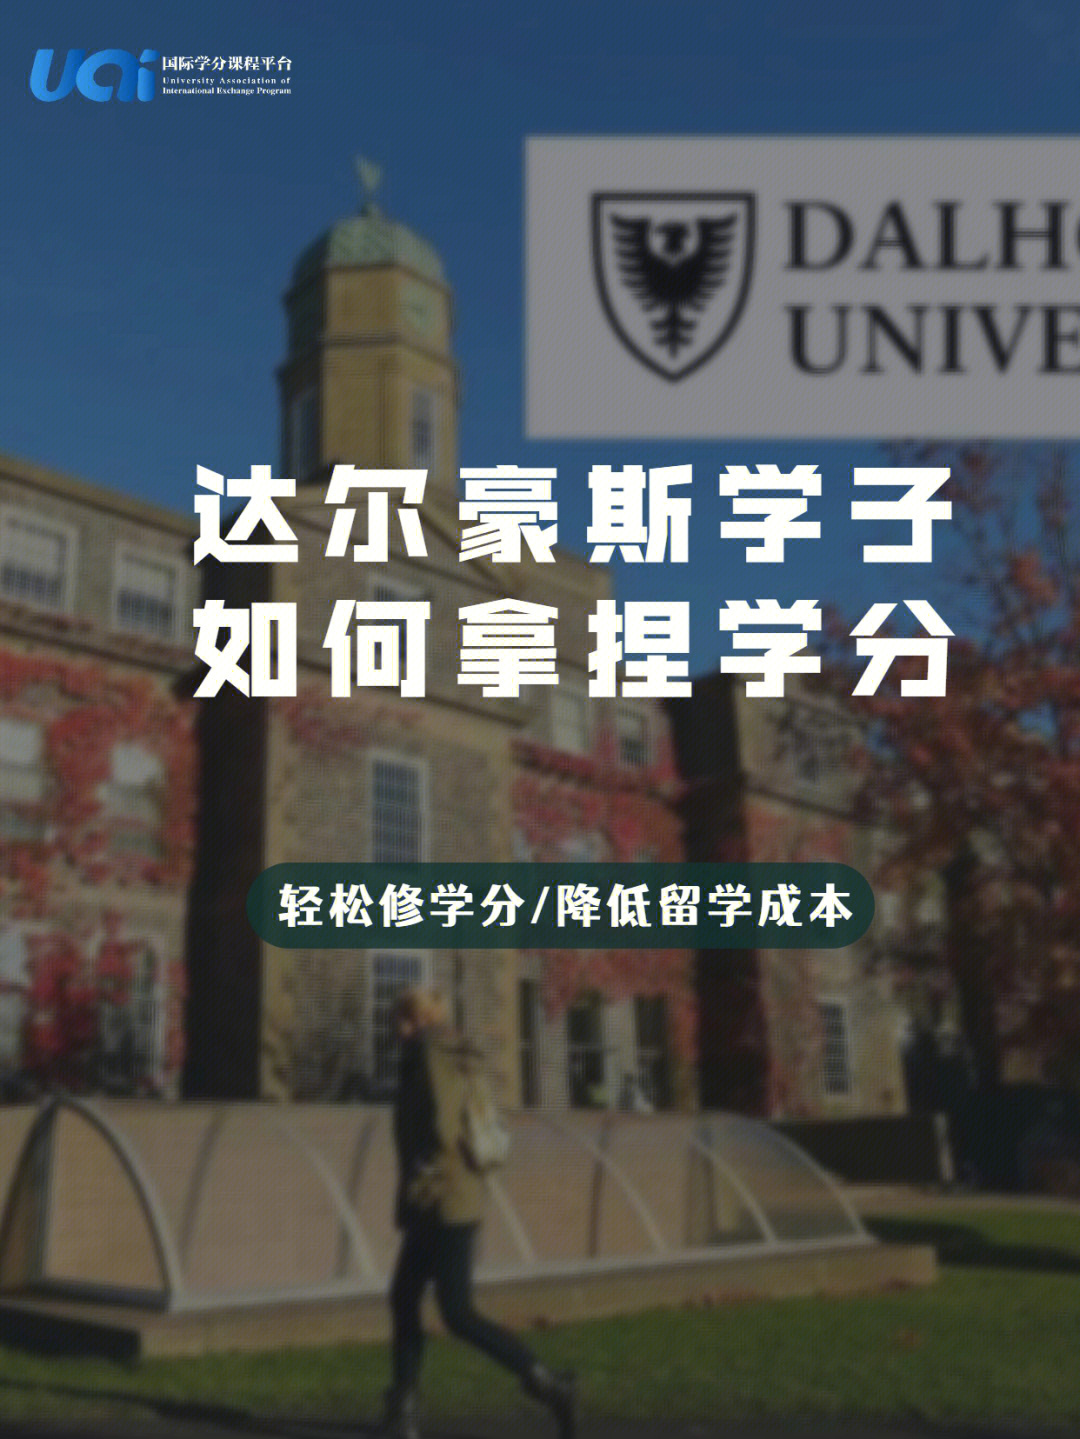 达尔豪斯大学(dalhousie university),又译作达尔豪西,戴尔豪西大学